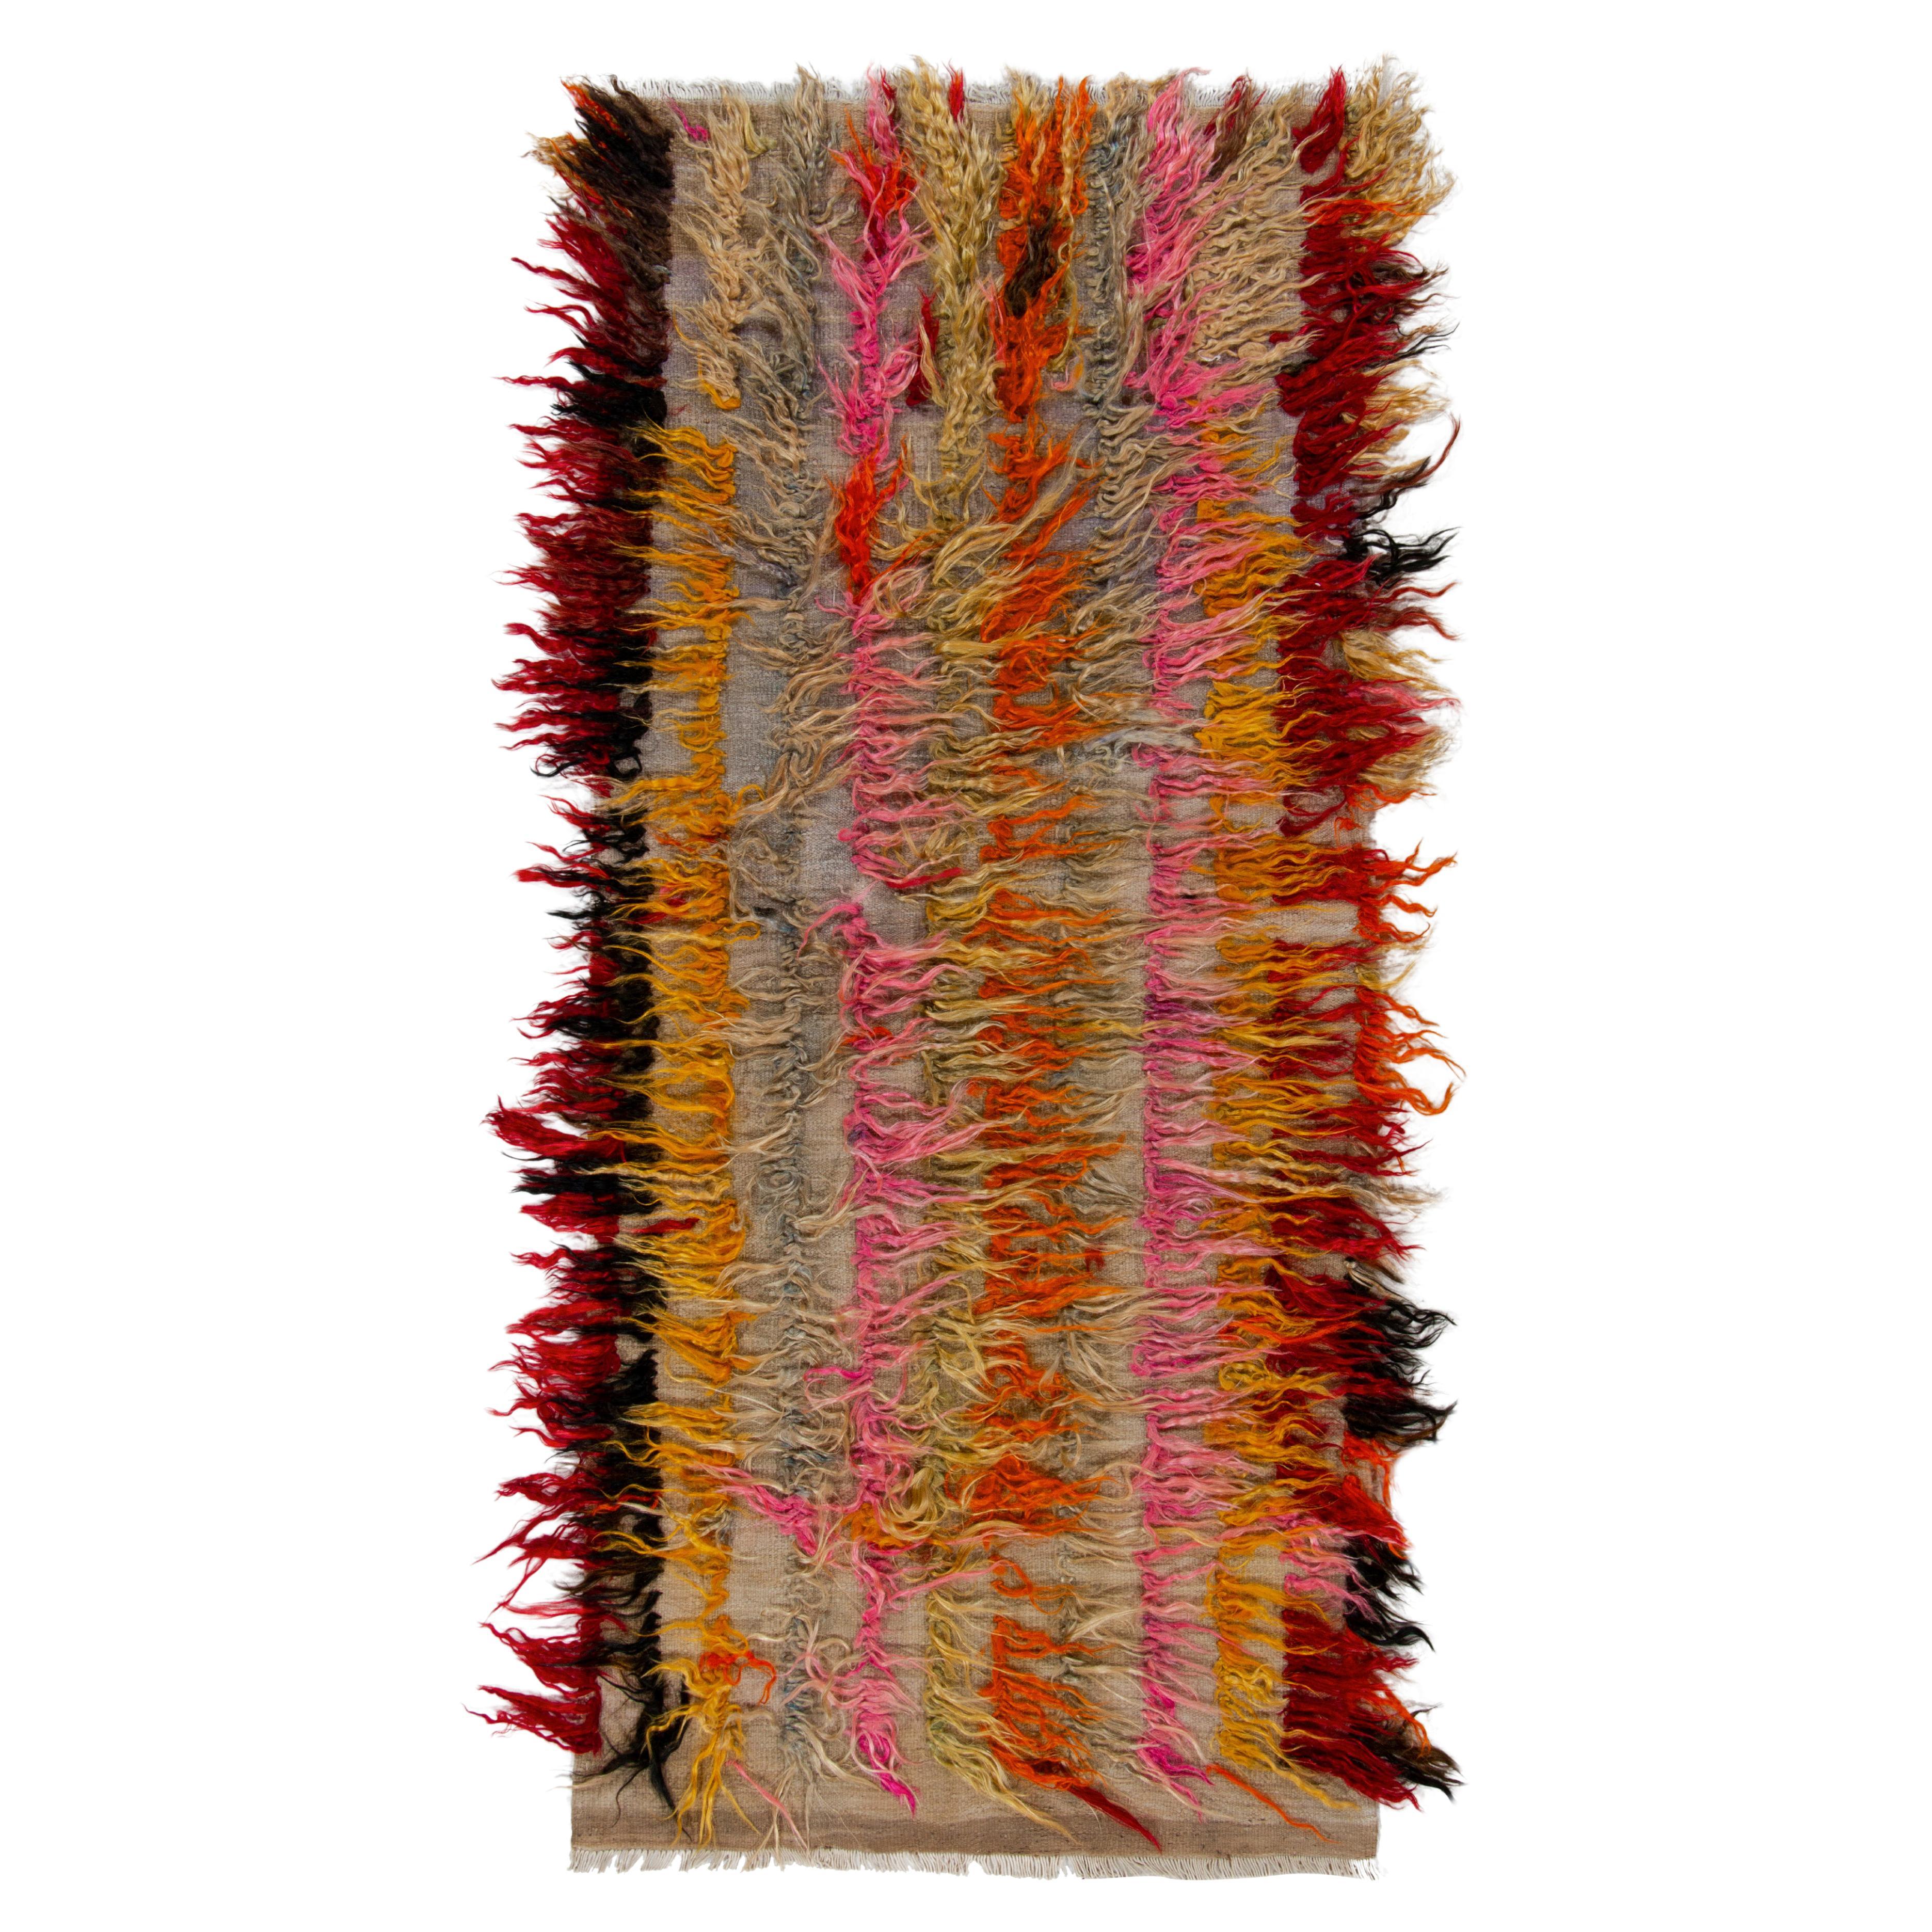 Vintage Tulu Shag Runner in Beige Multicolor High-Low Pile Stripe by Rug & Kilim